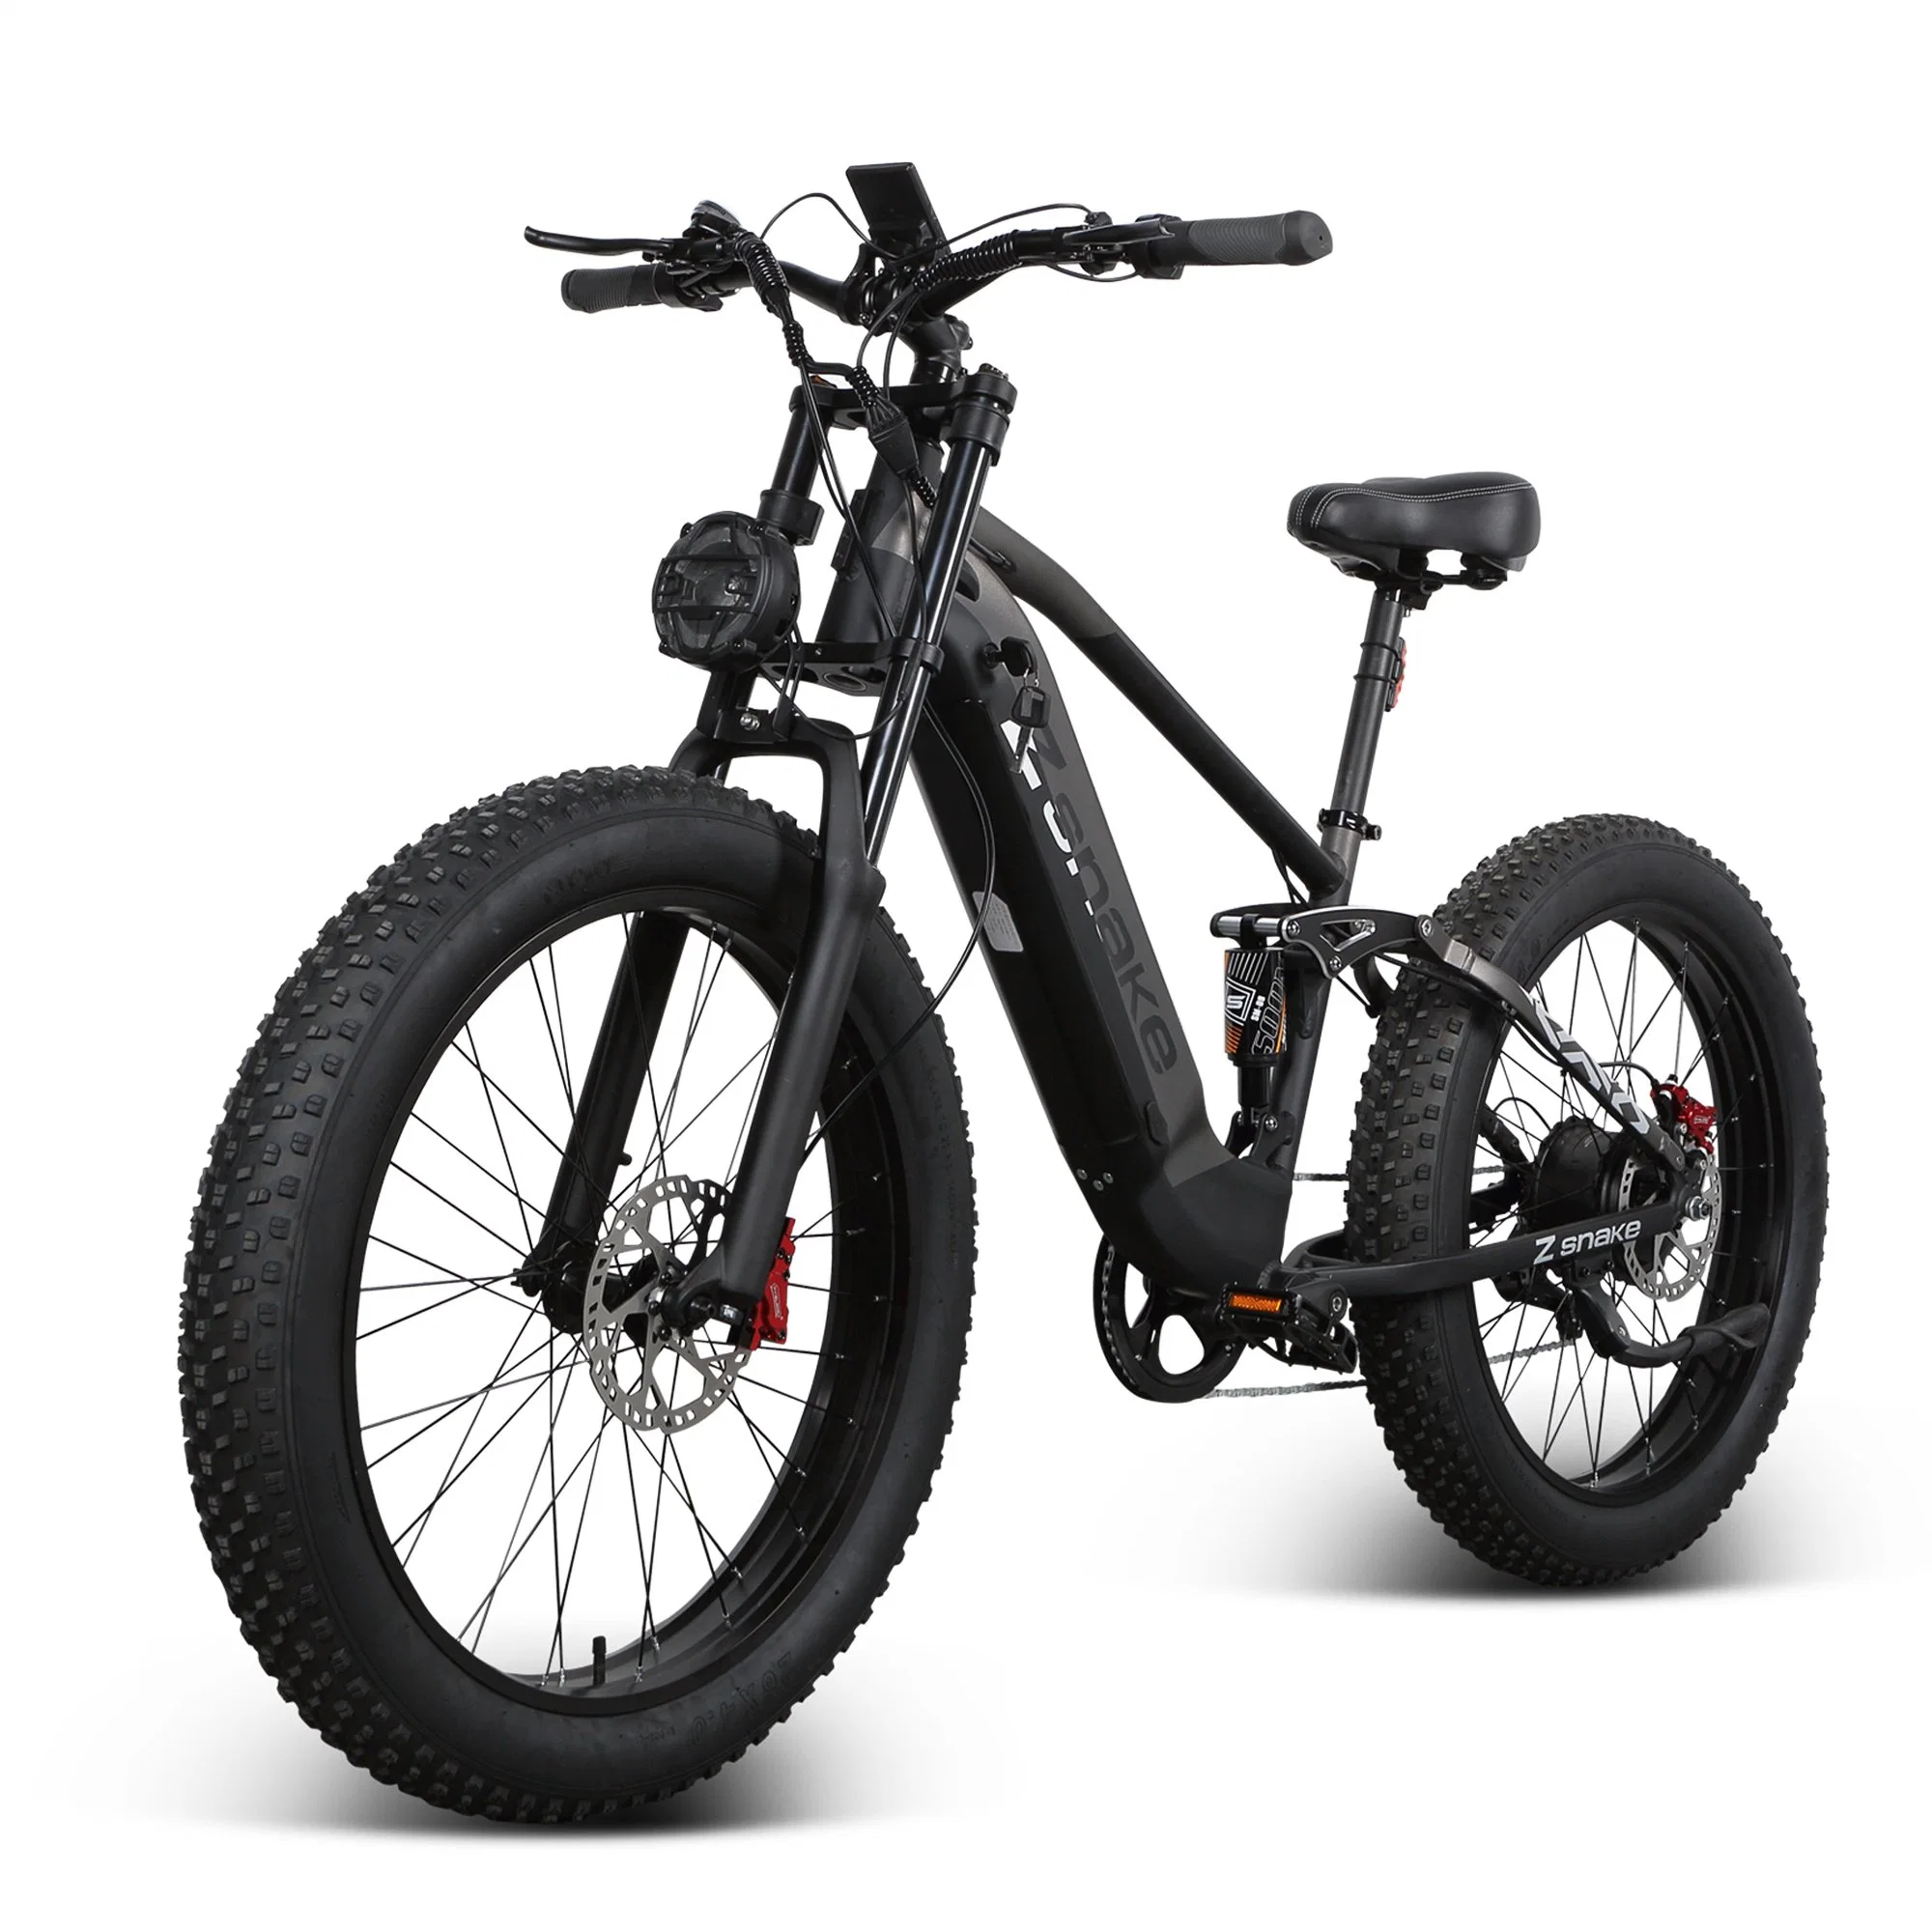 Zsnake Vélo électrique 750W pour adultes VTT électrique 30 Mph avec batterie au lithium amovible 48V 20A, pneus de route gras de 26 pouces et affichage LED.